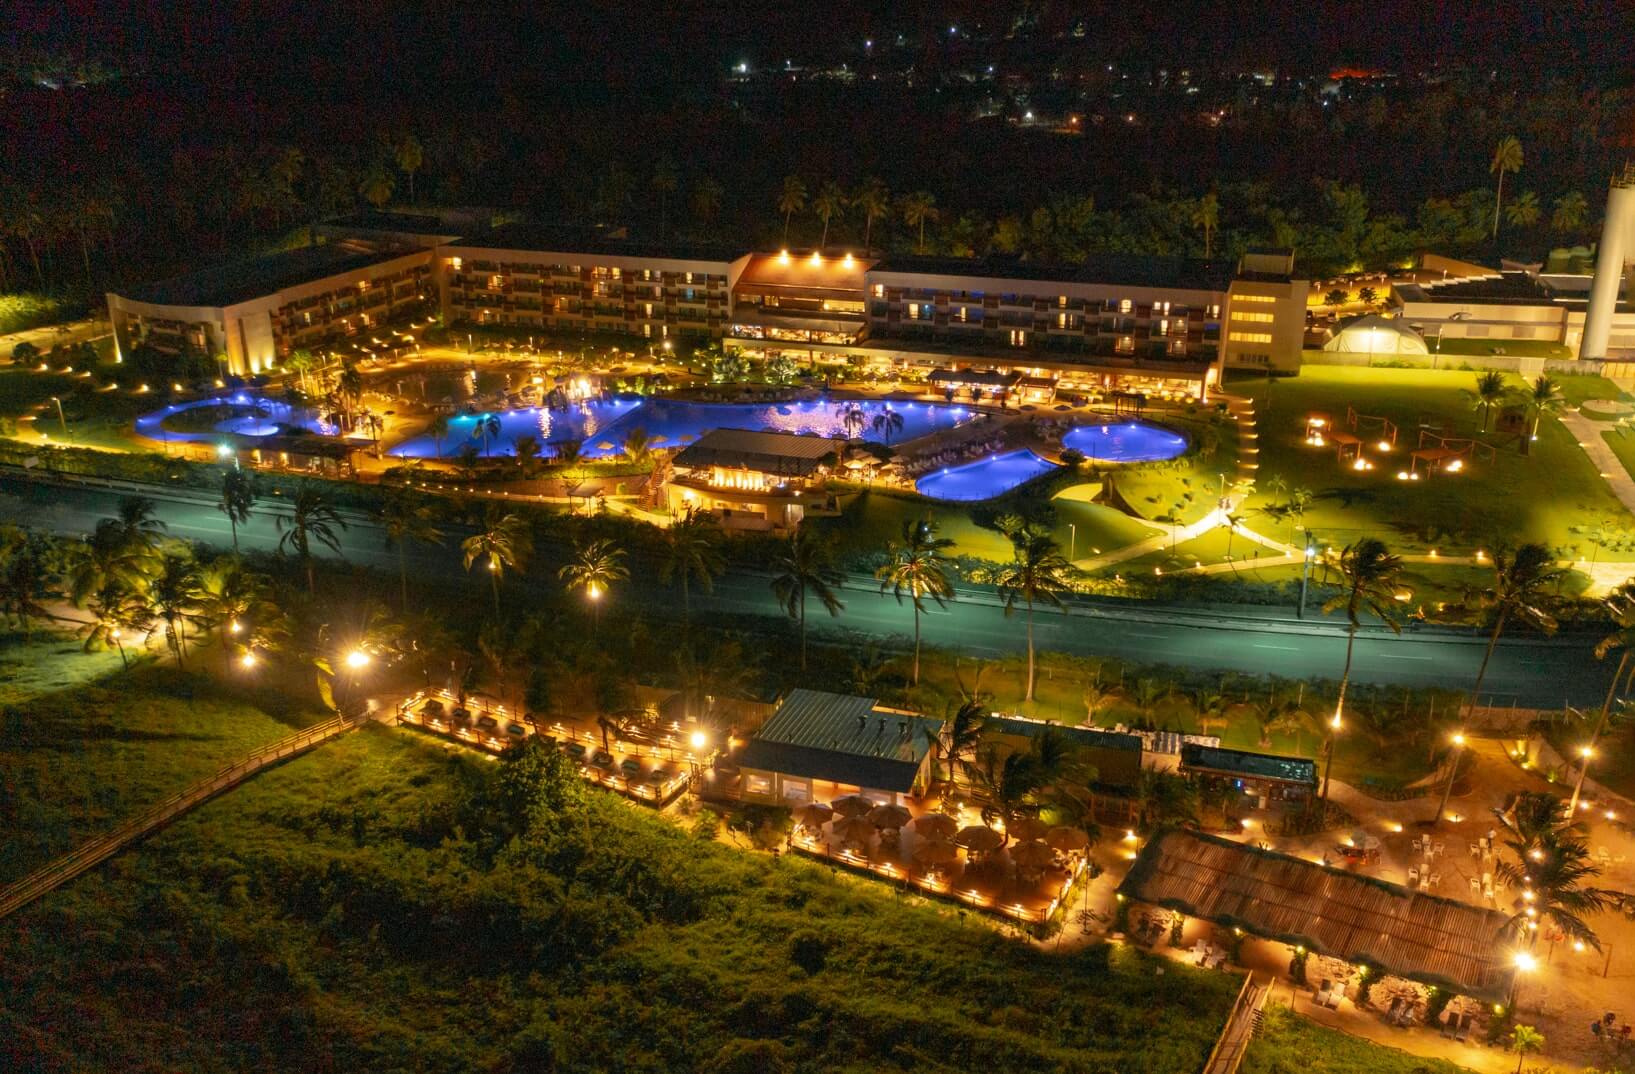 Vista aérea noturna da estrutura completa do Japaratinga Lounge Resort revela a magia das luzes que iluminam todoo resort, enquanto as piscinas exibem reflexos em tons de azul.